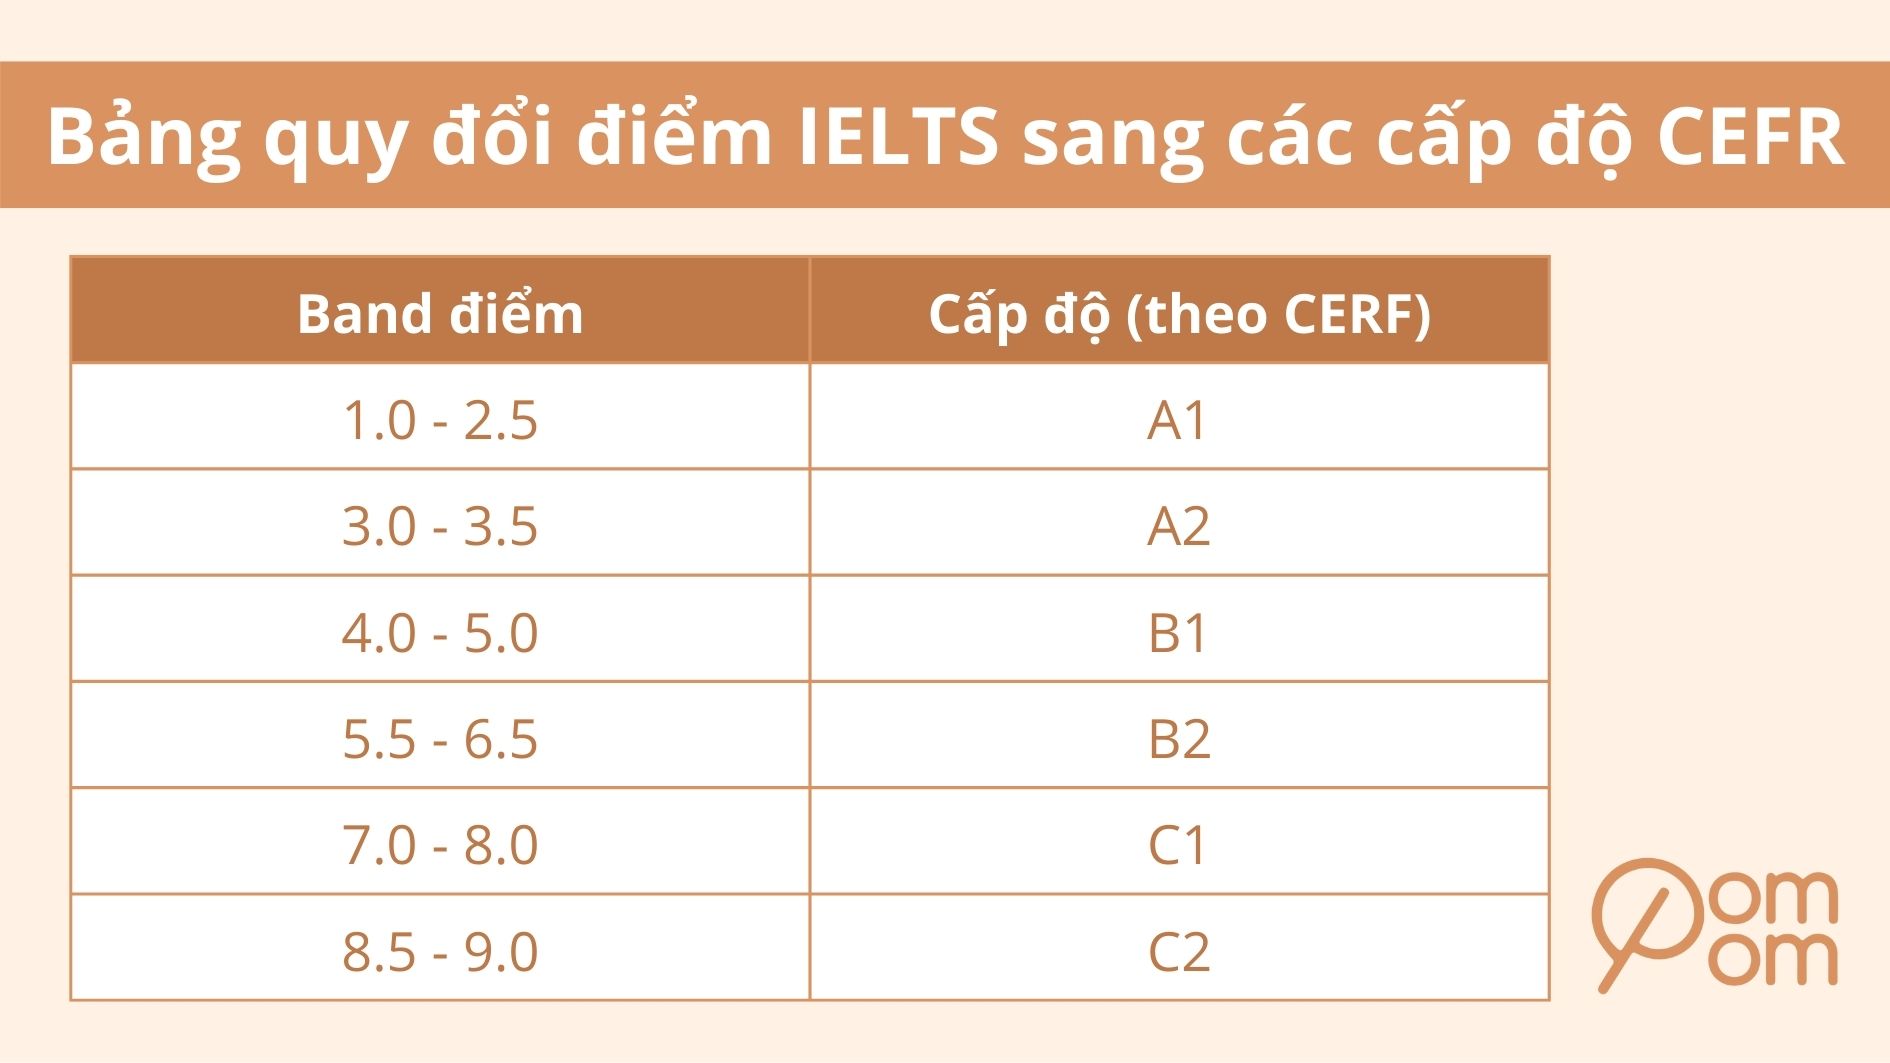 Quy đổi điểm IELTS sang các cấp độ CEFR